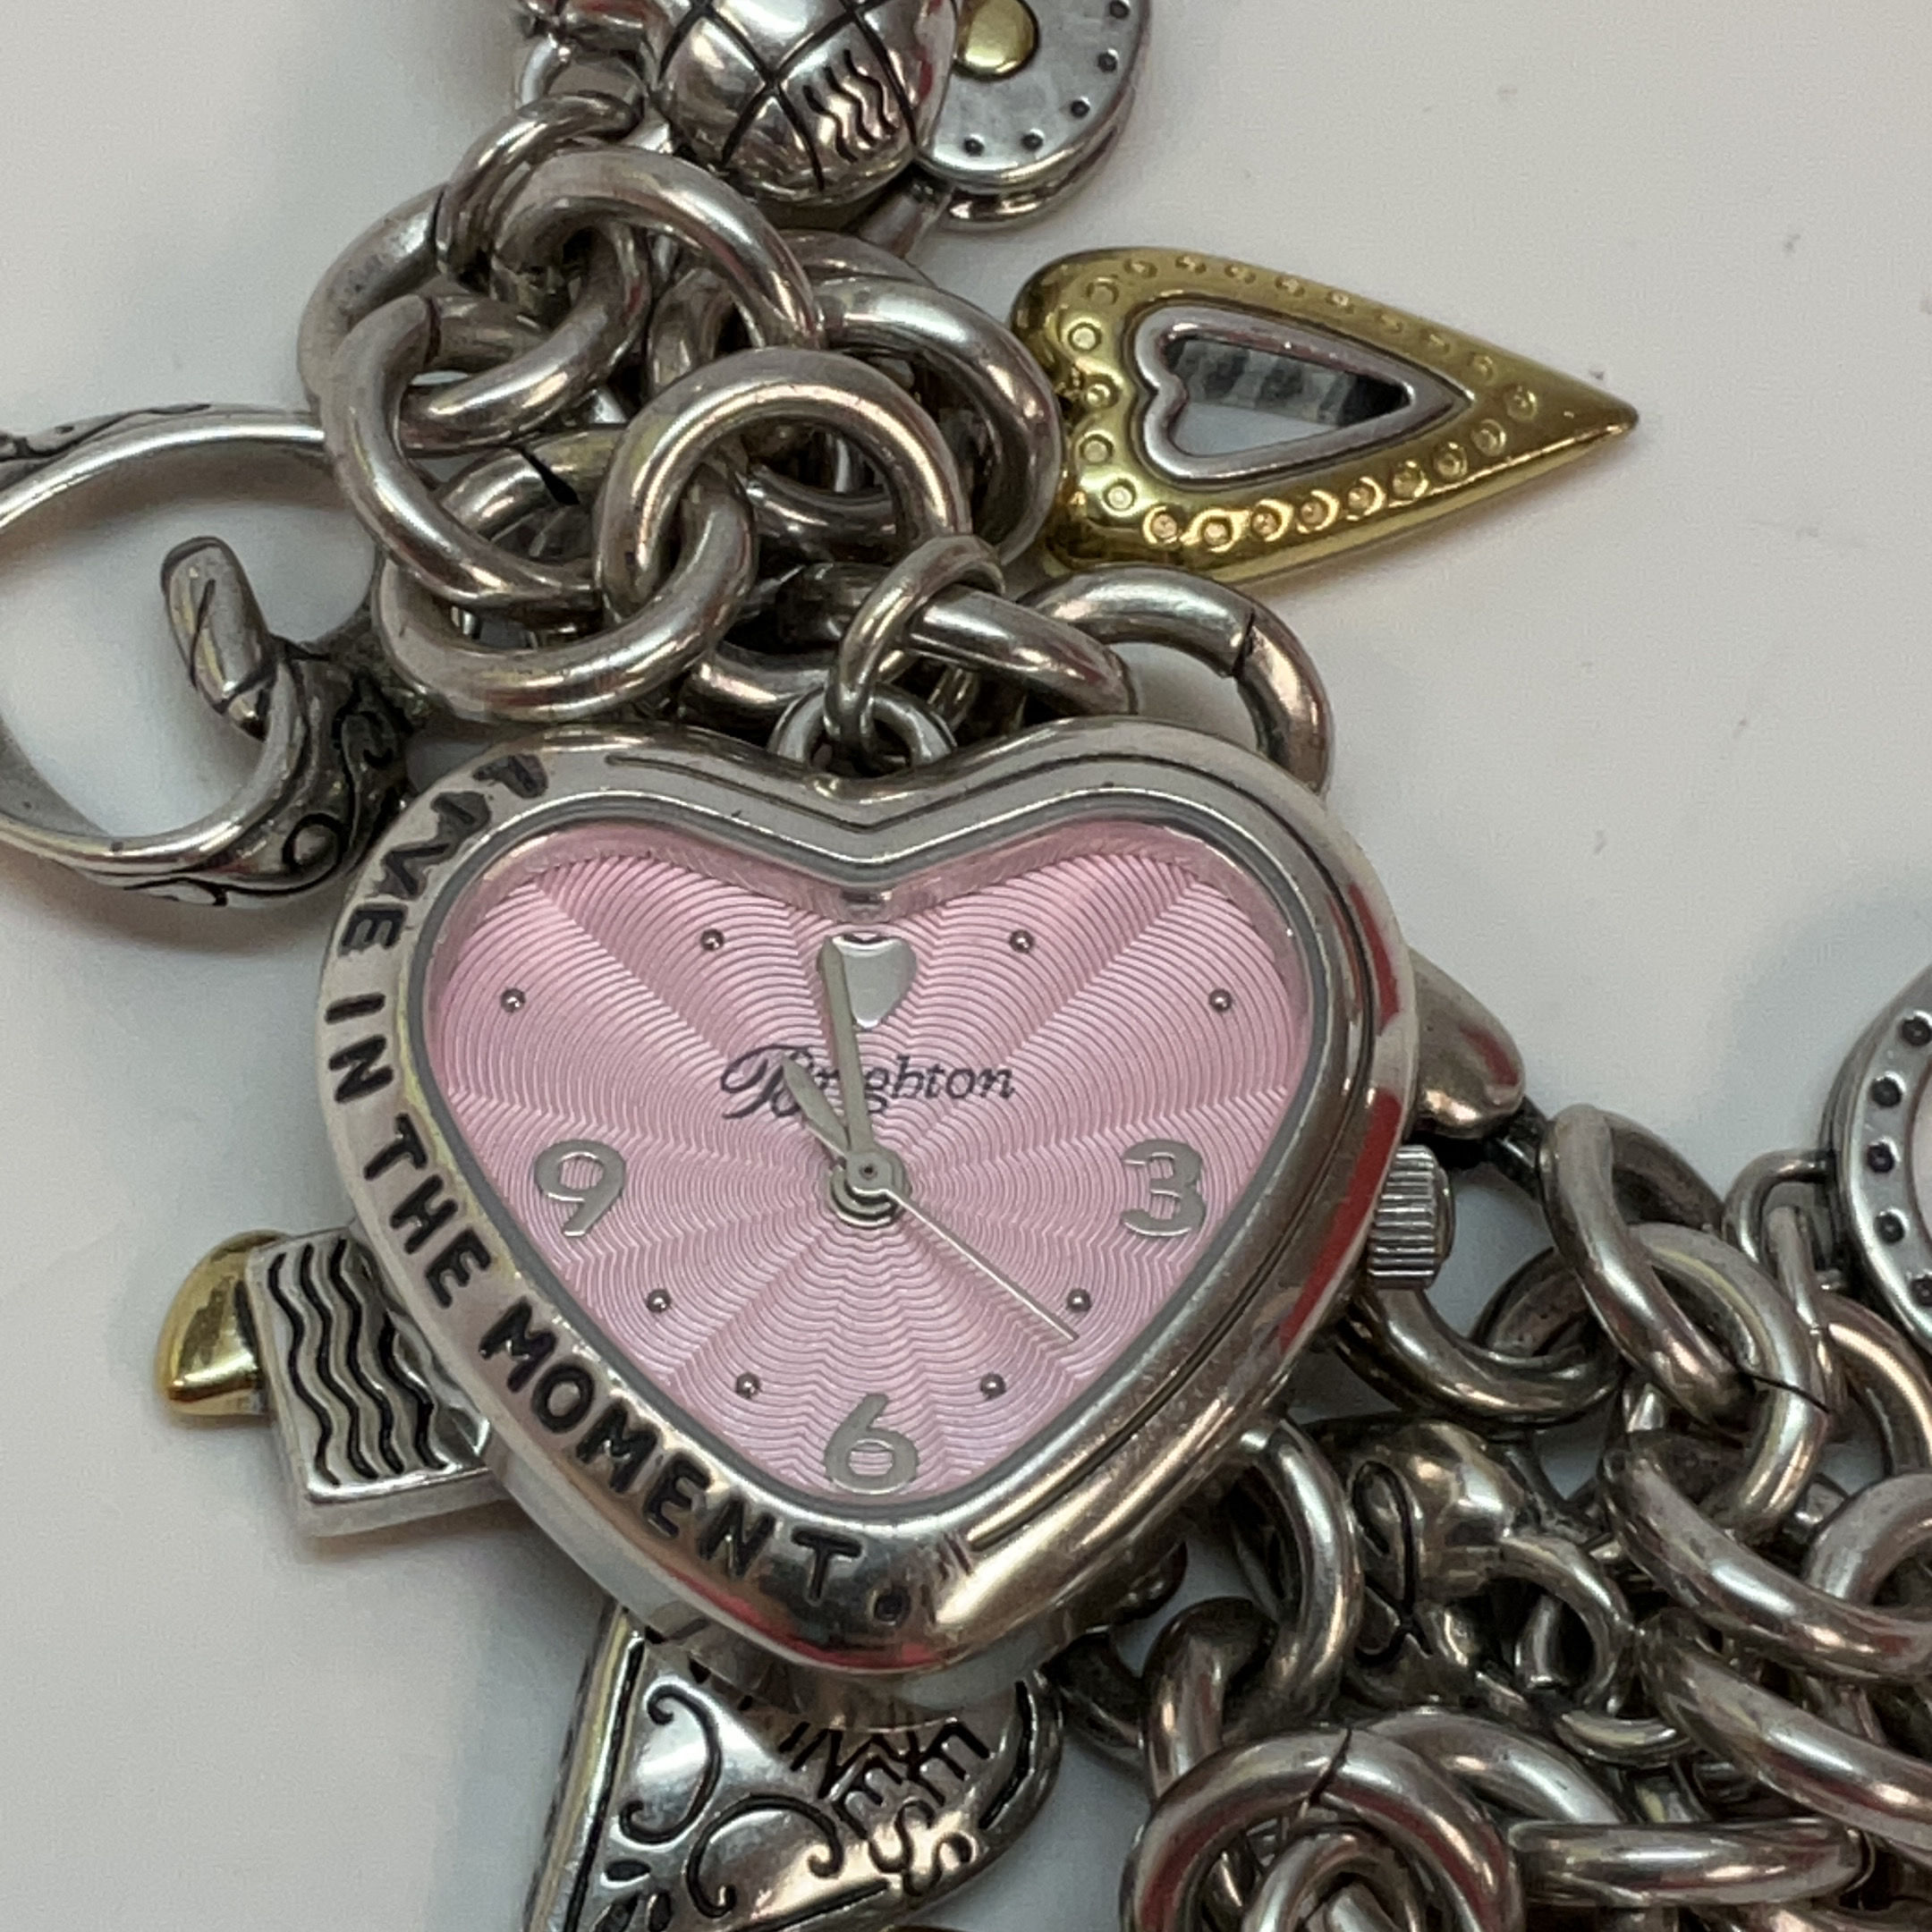 Charm Bracelet Watch With A Dress Watch Too | eBay